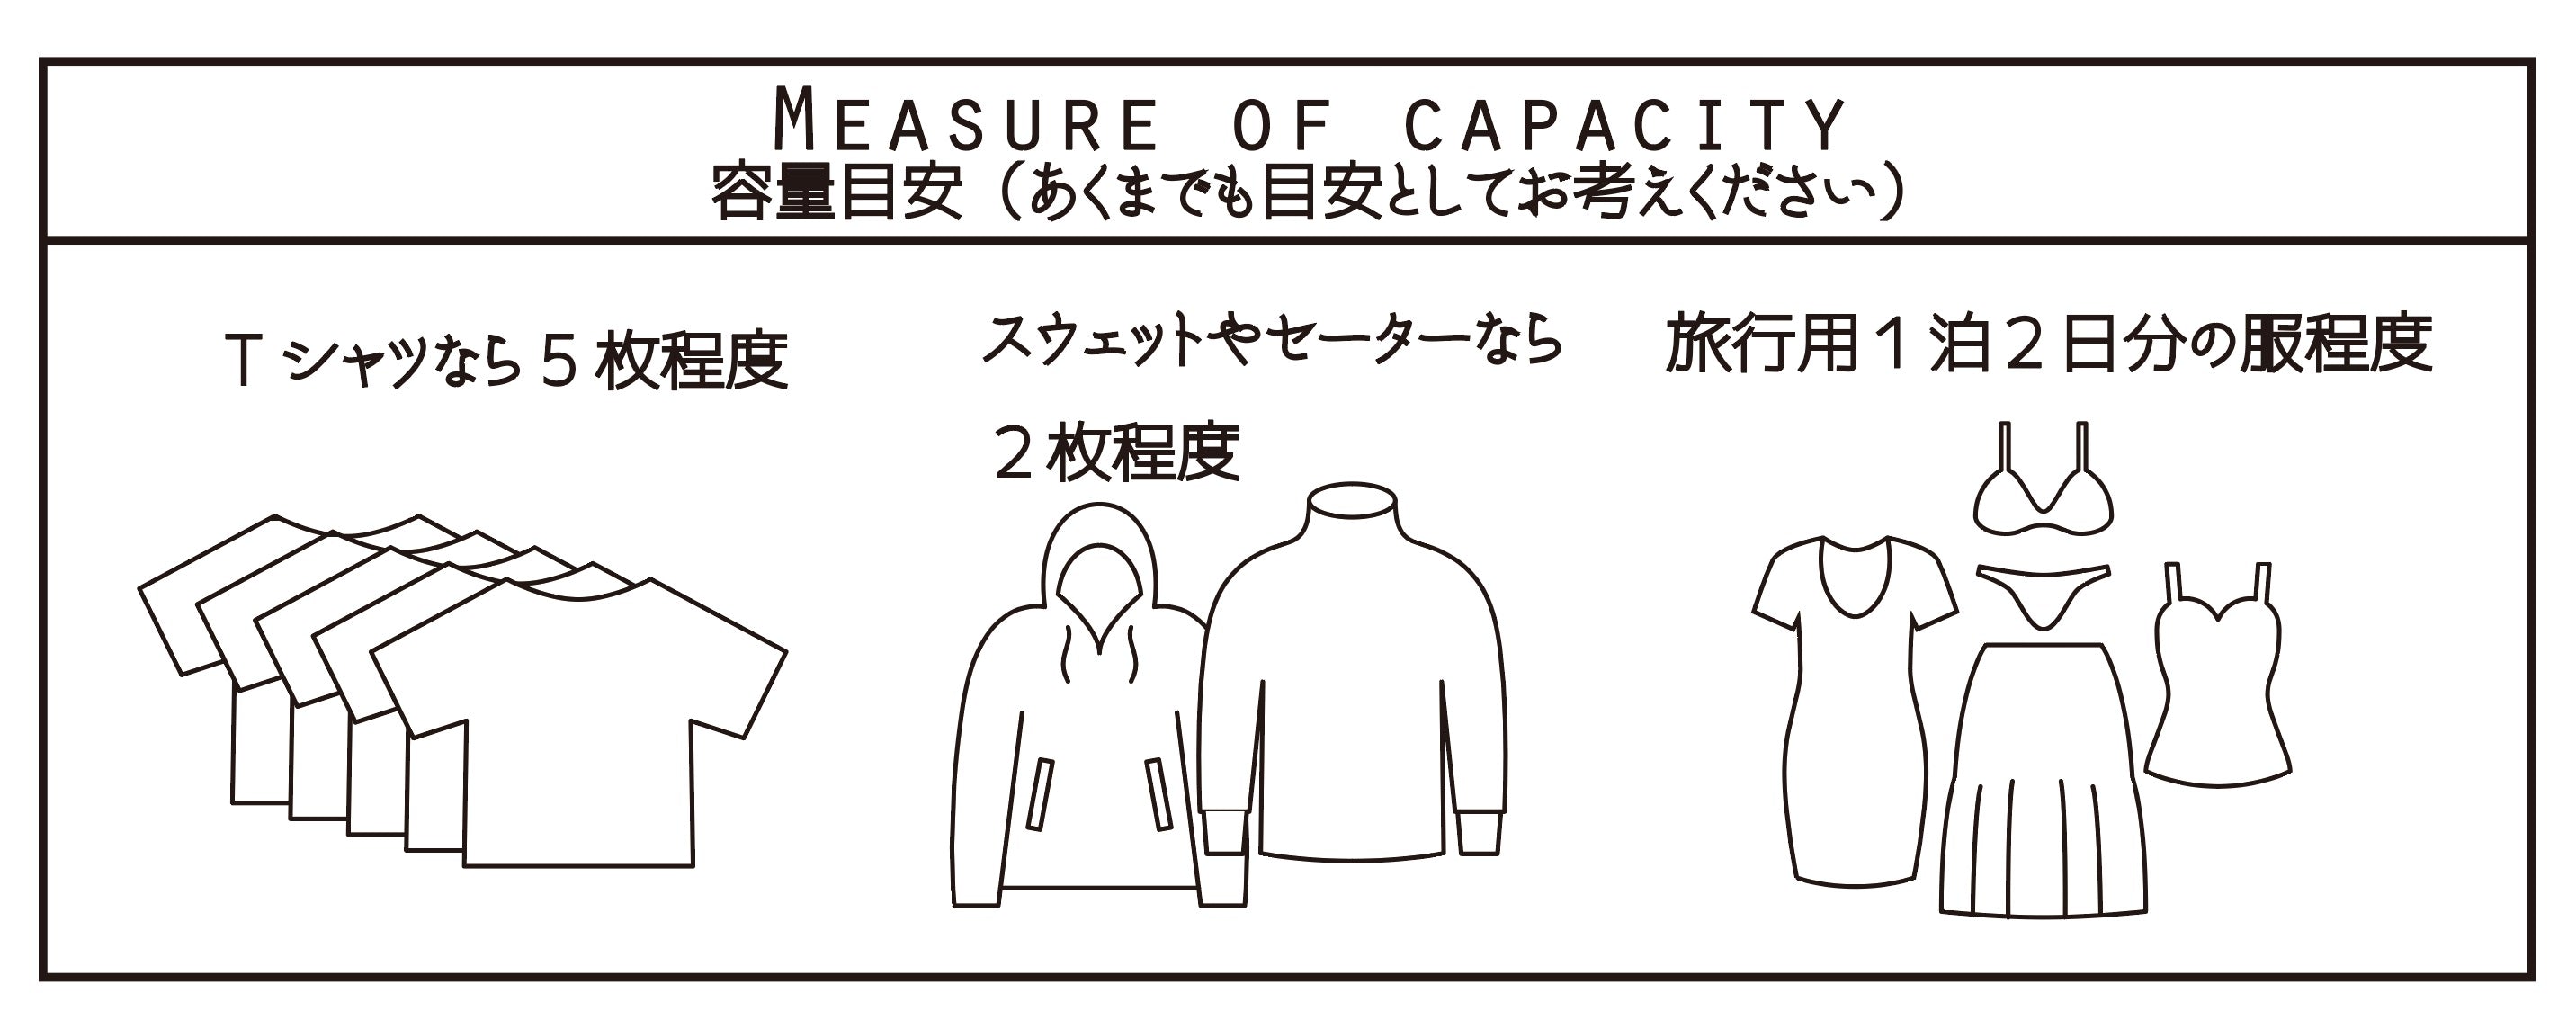 【50%OFF】compression bag mil spec